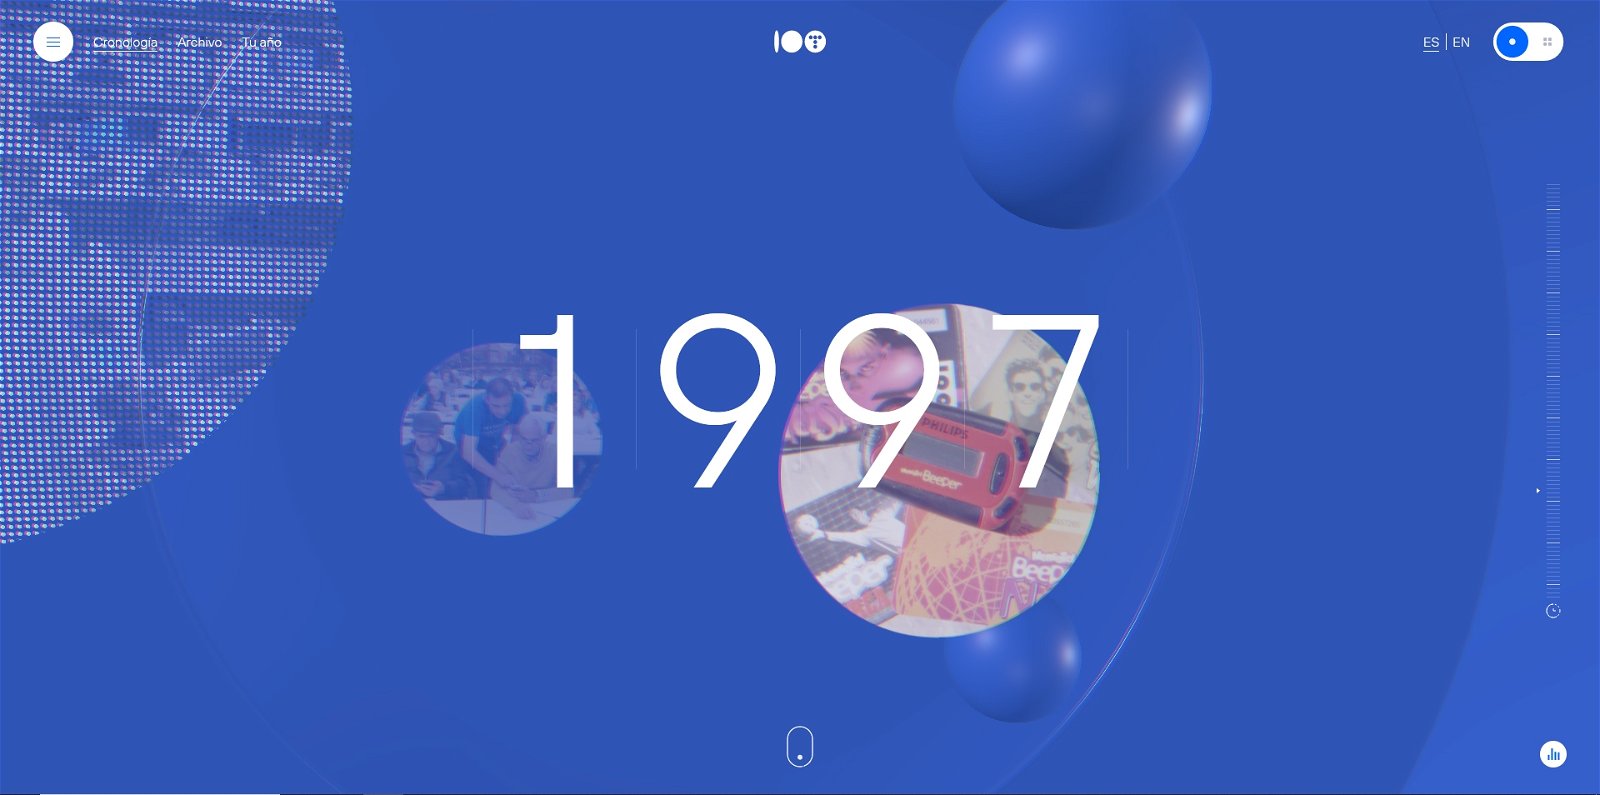 Telefónica cumple 100 años y lo celebra con una web interactiva para repasar toda su historia